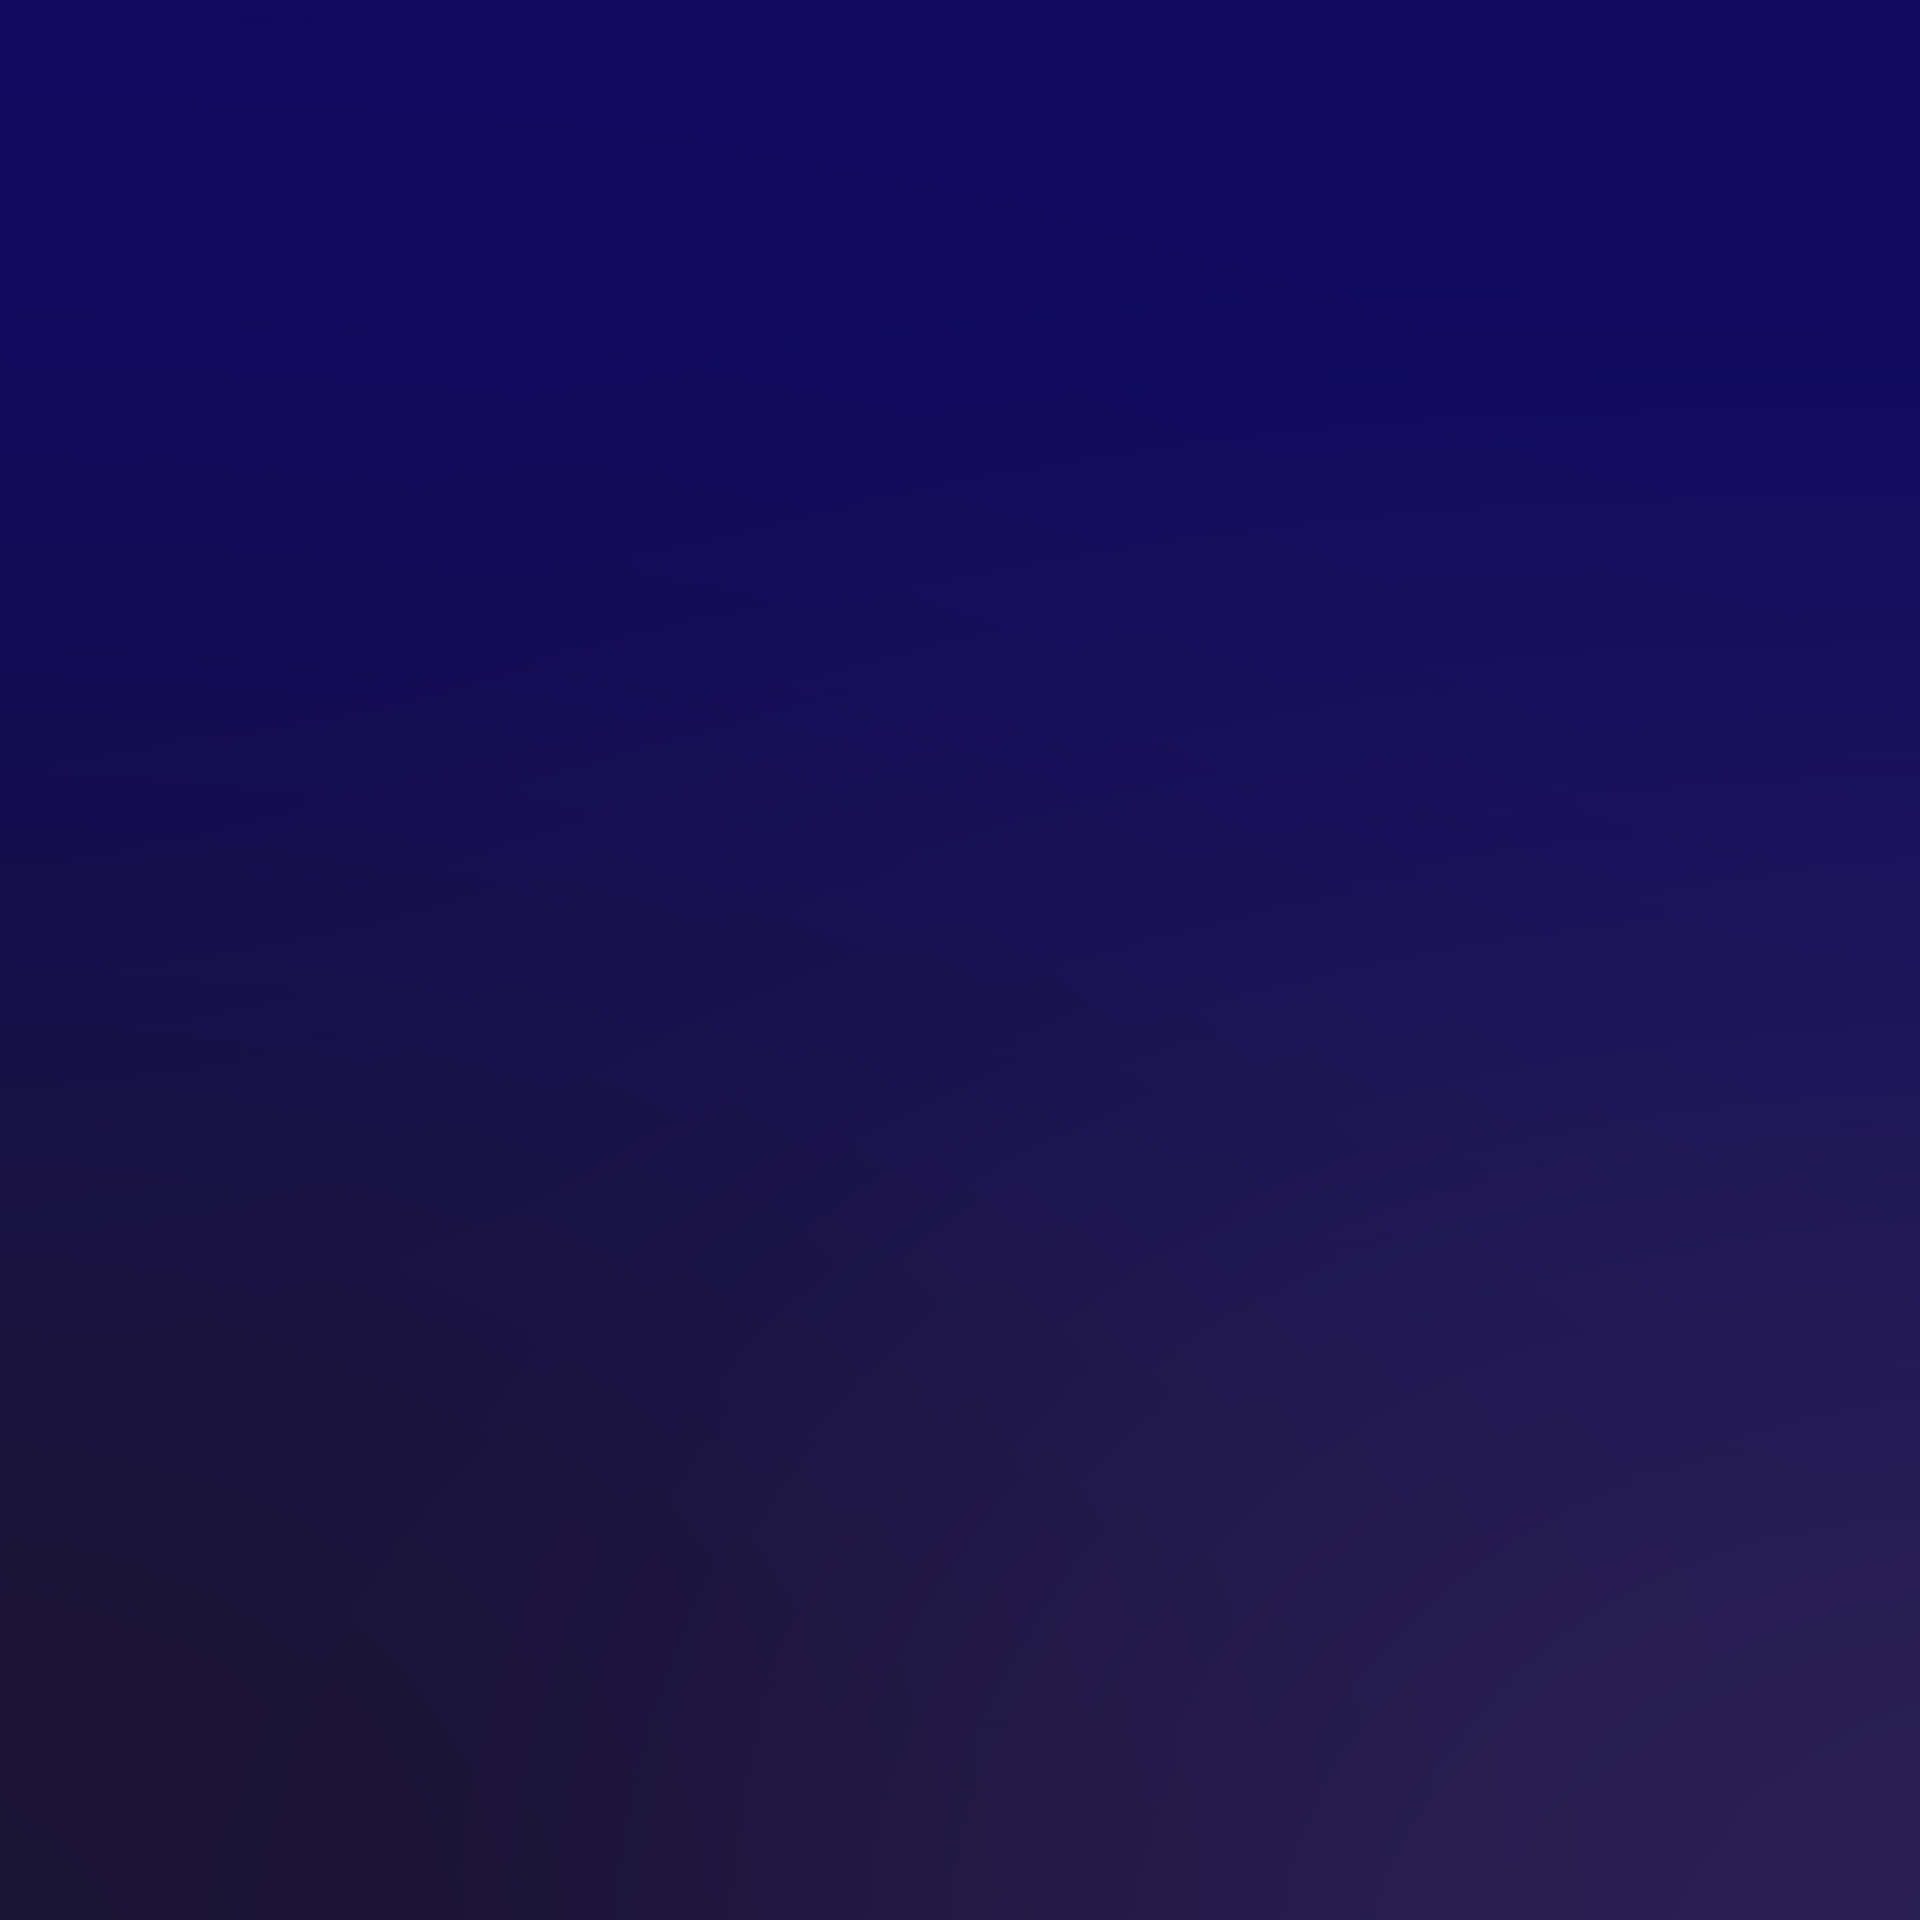 Ombreazul Oscuro, Una Cautivadora Combinación De Azules Y Degradados. Fondo de pantalla